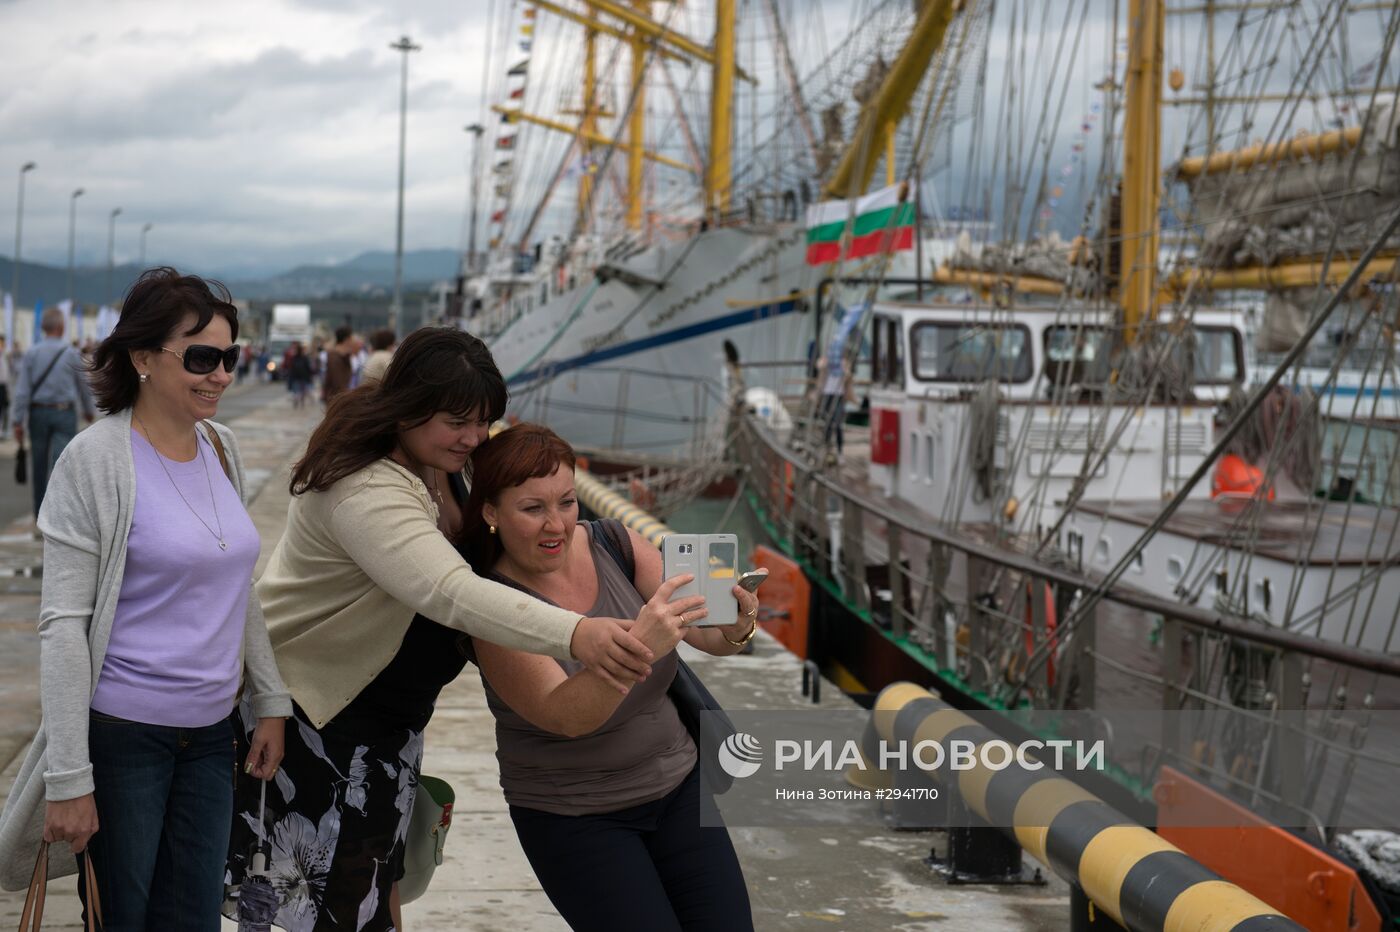 Черноморская регата больших парусников в Сочи